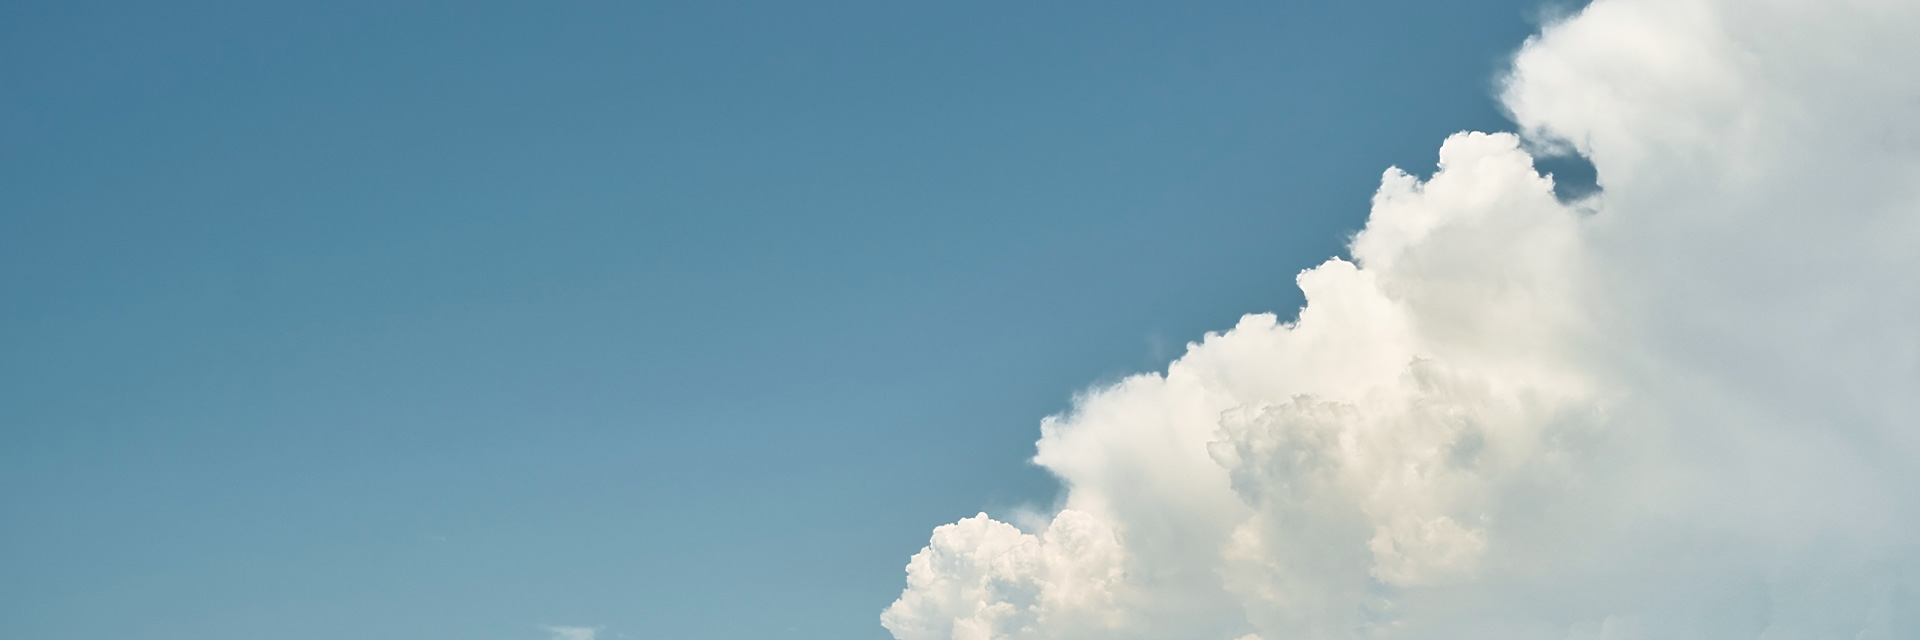 Что такое облачная crm система и зачем она нужна статья